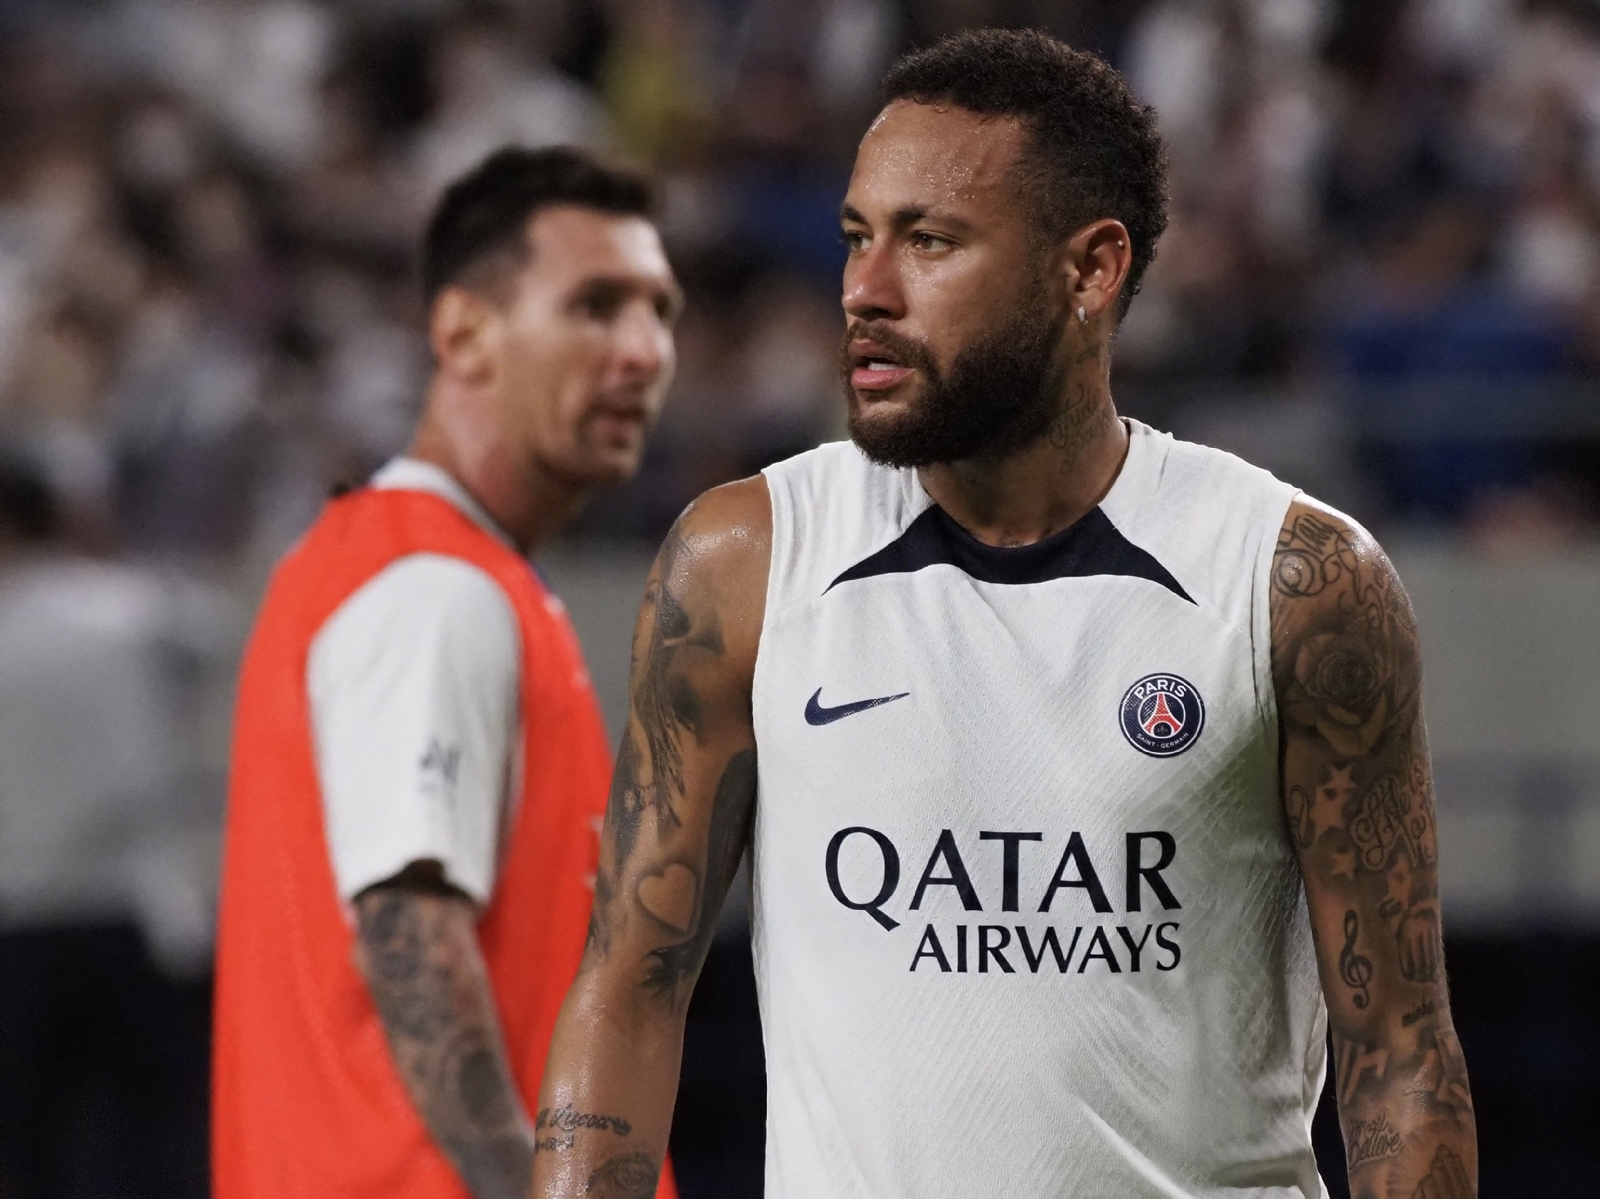 Neymar ROMPE EN LLANTO tras perder UN MILLÓN DE EUROS